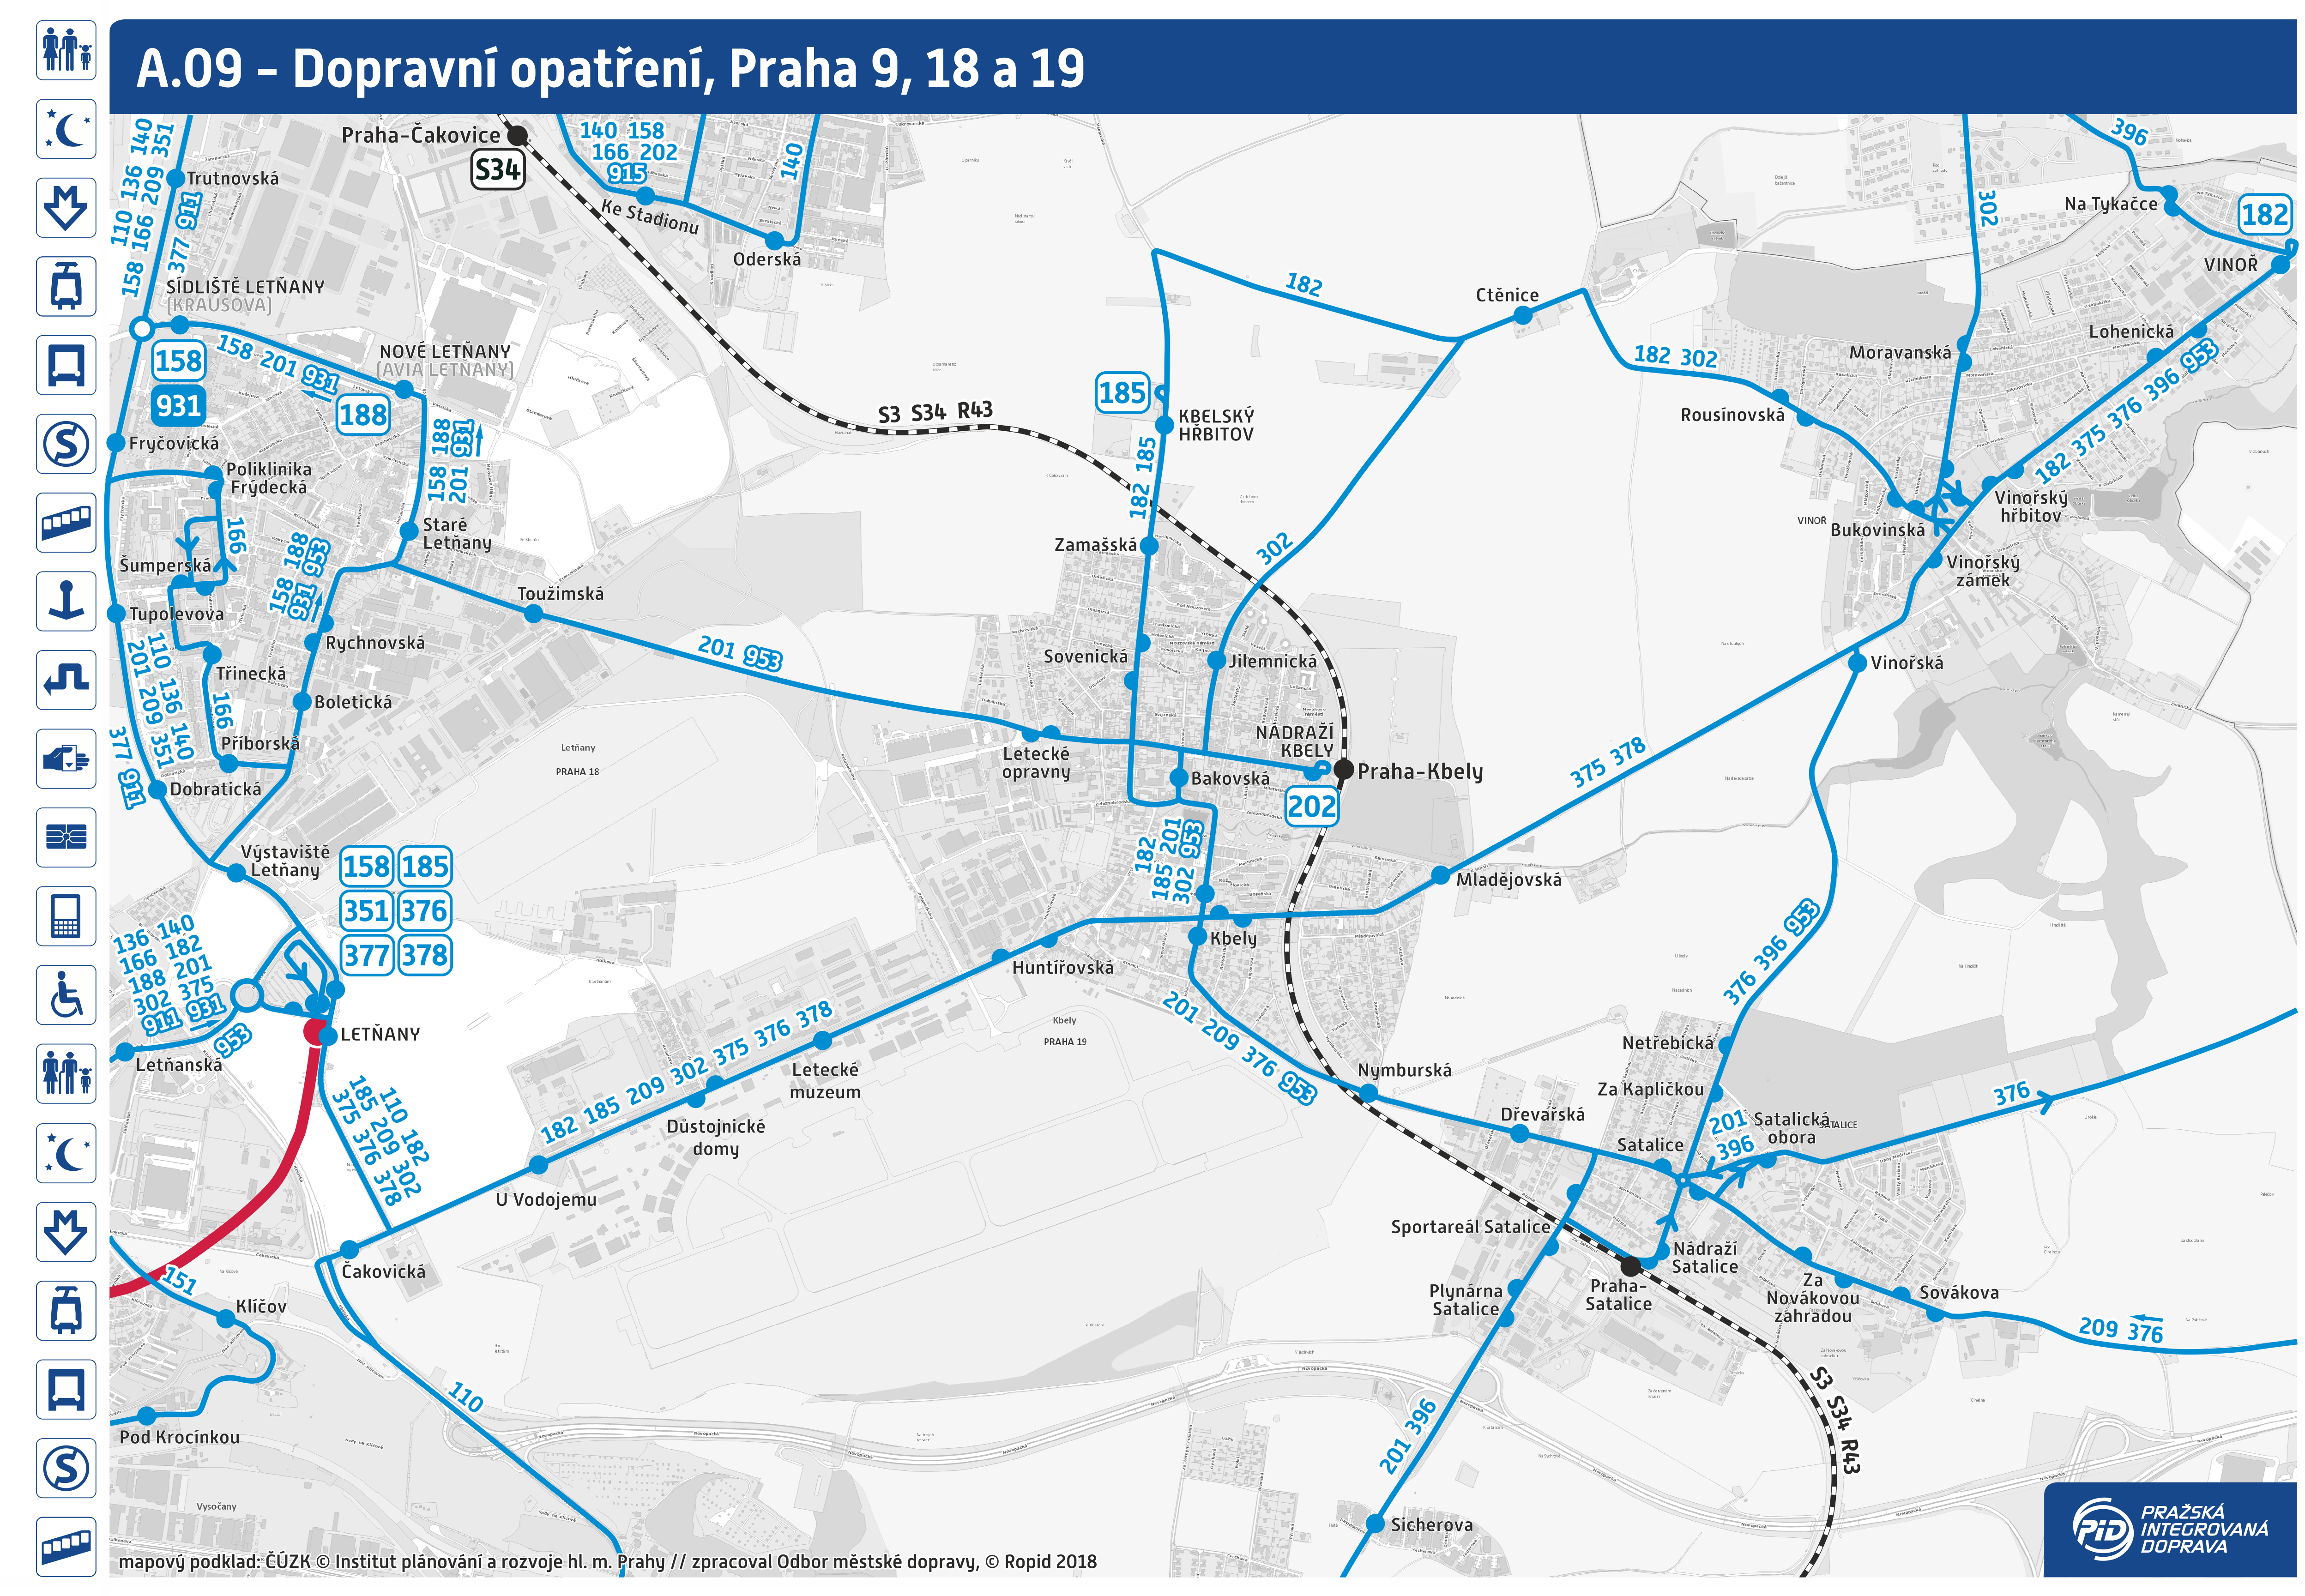 mapa metra praha 2019 Rozvoj linek PID v Praze 2019 2029 | Pražská integrovaná doprava mapa metra praha 2019